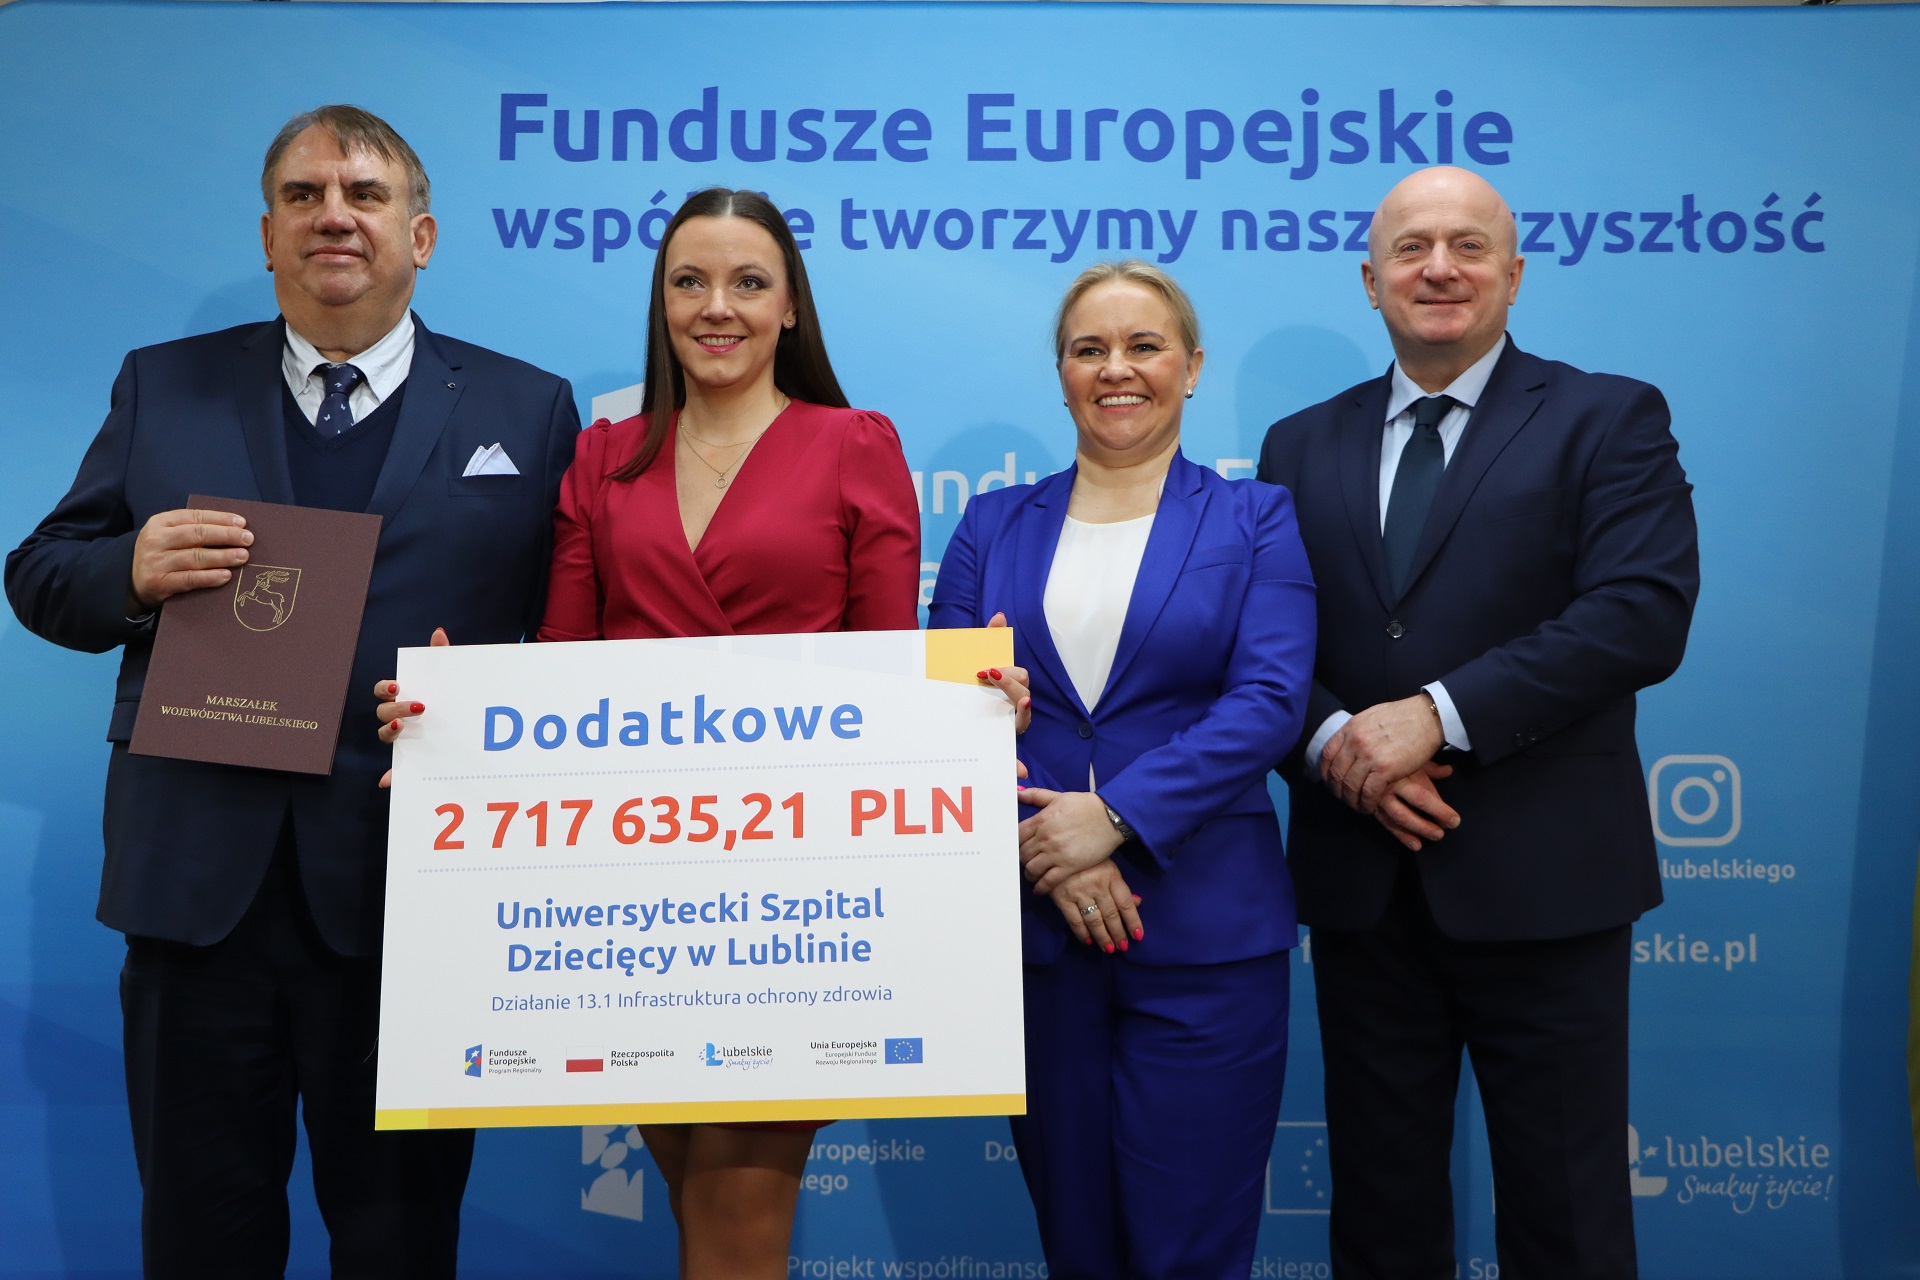 Kolejne Fundusze Europejskie dla Uniwersyteckiego Szpitala Dziecięcego w Lublinie